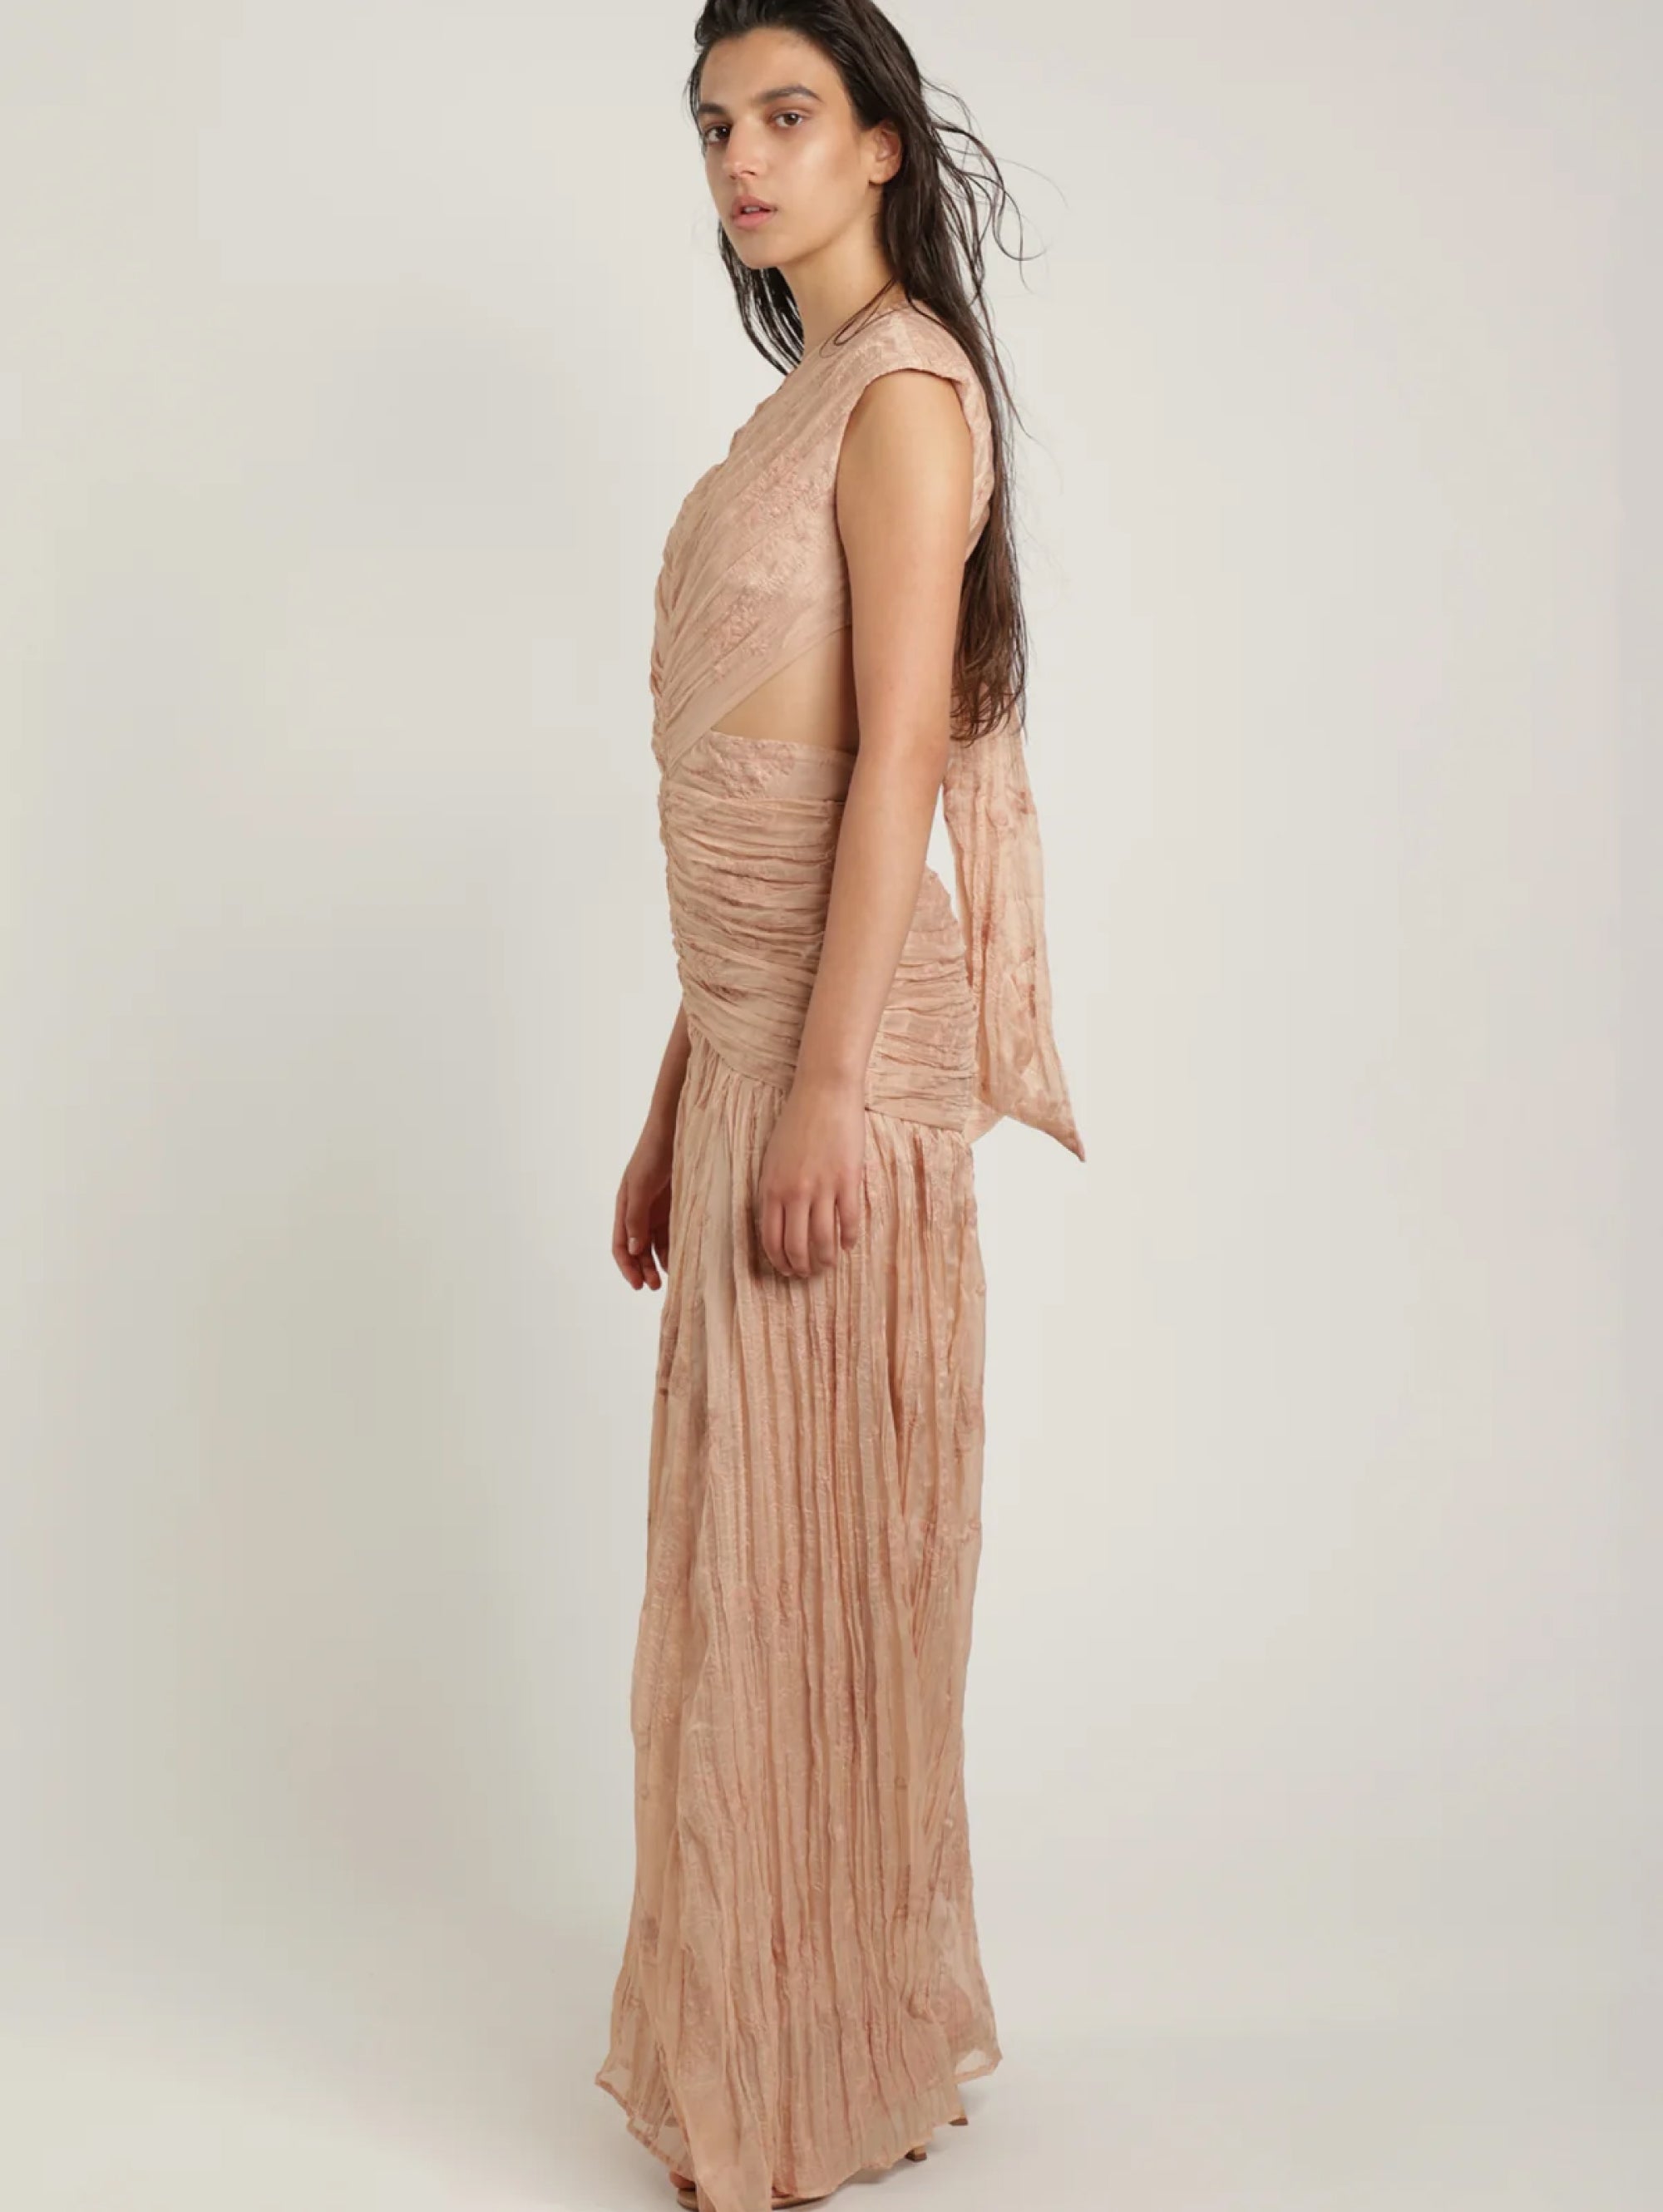 Kleid mit offenem Rücken aus geprägtem Stoff mit puderrosa Stickerei